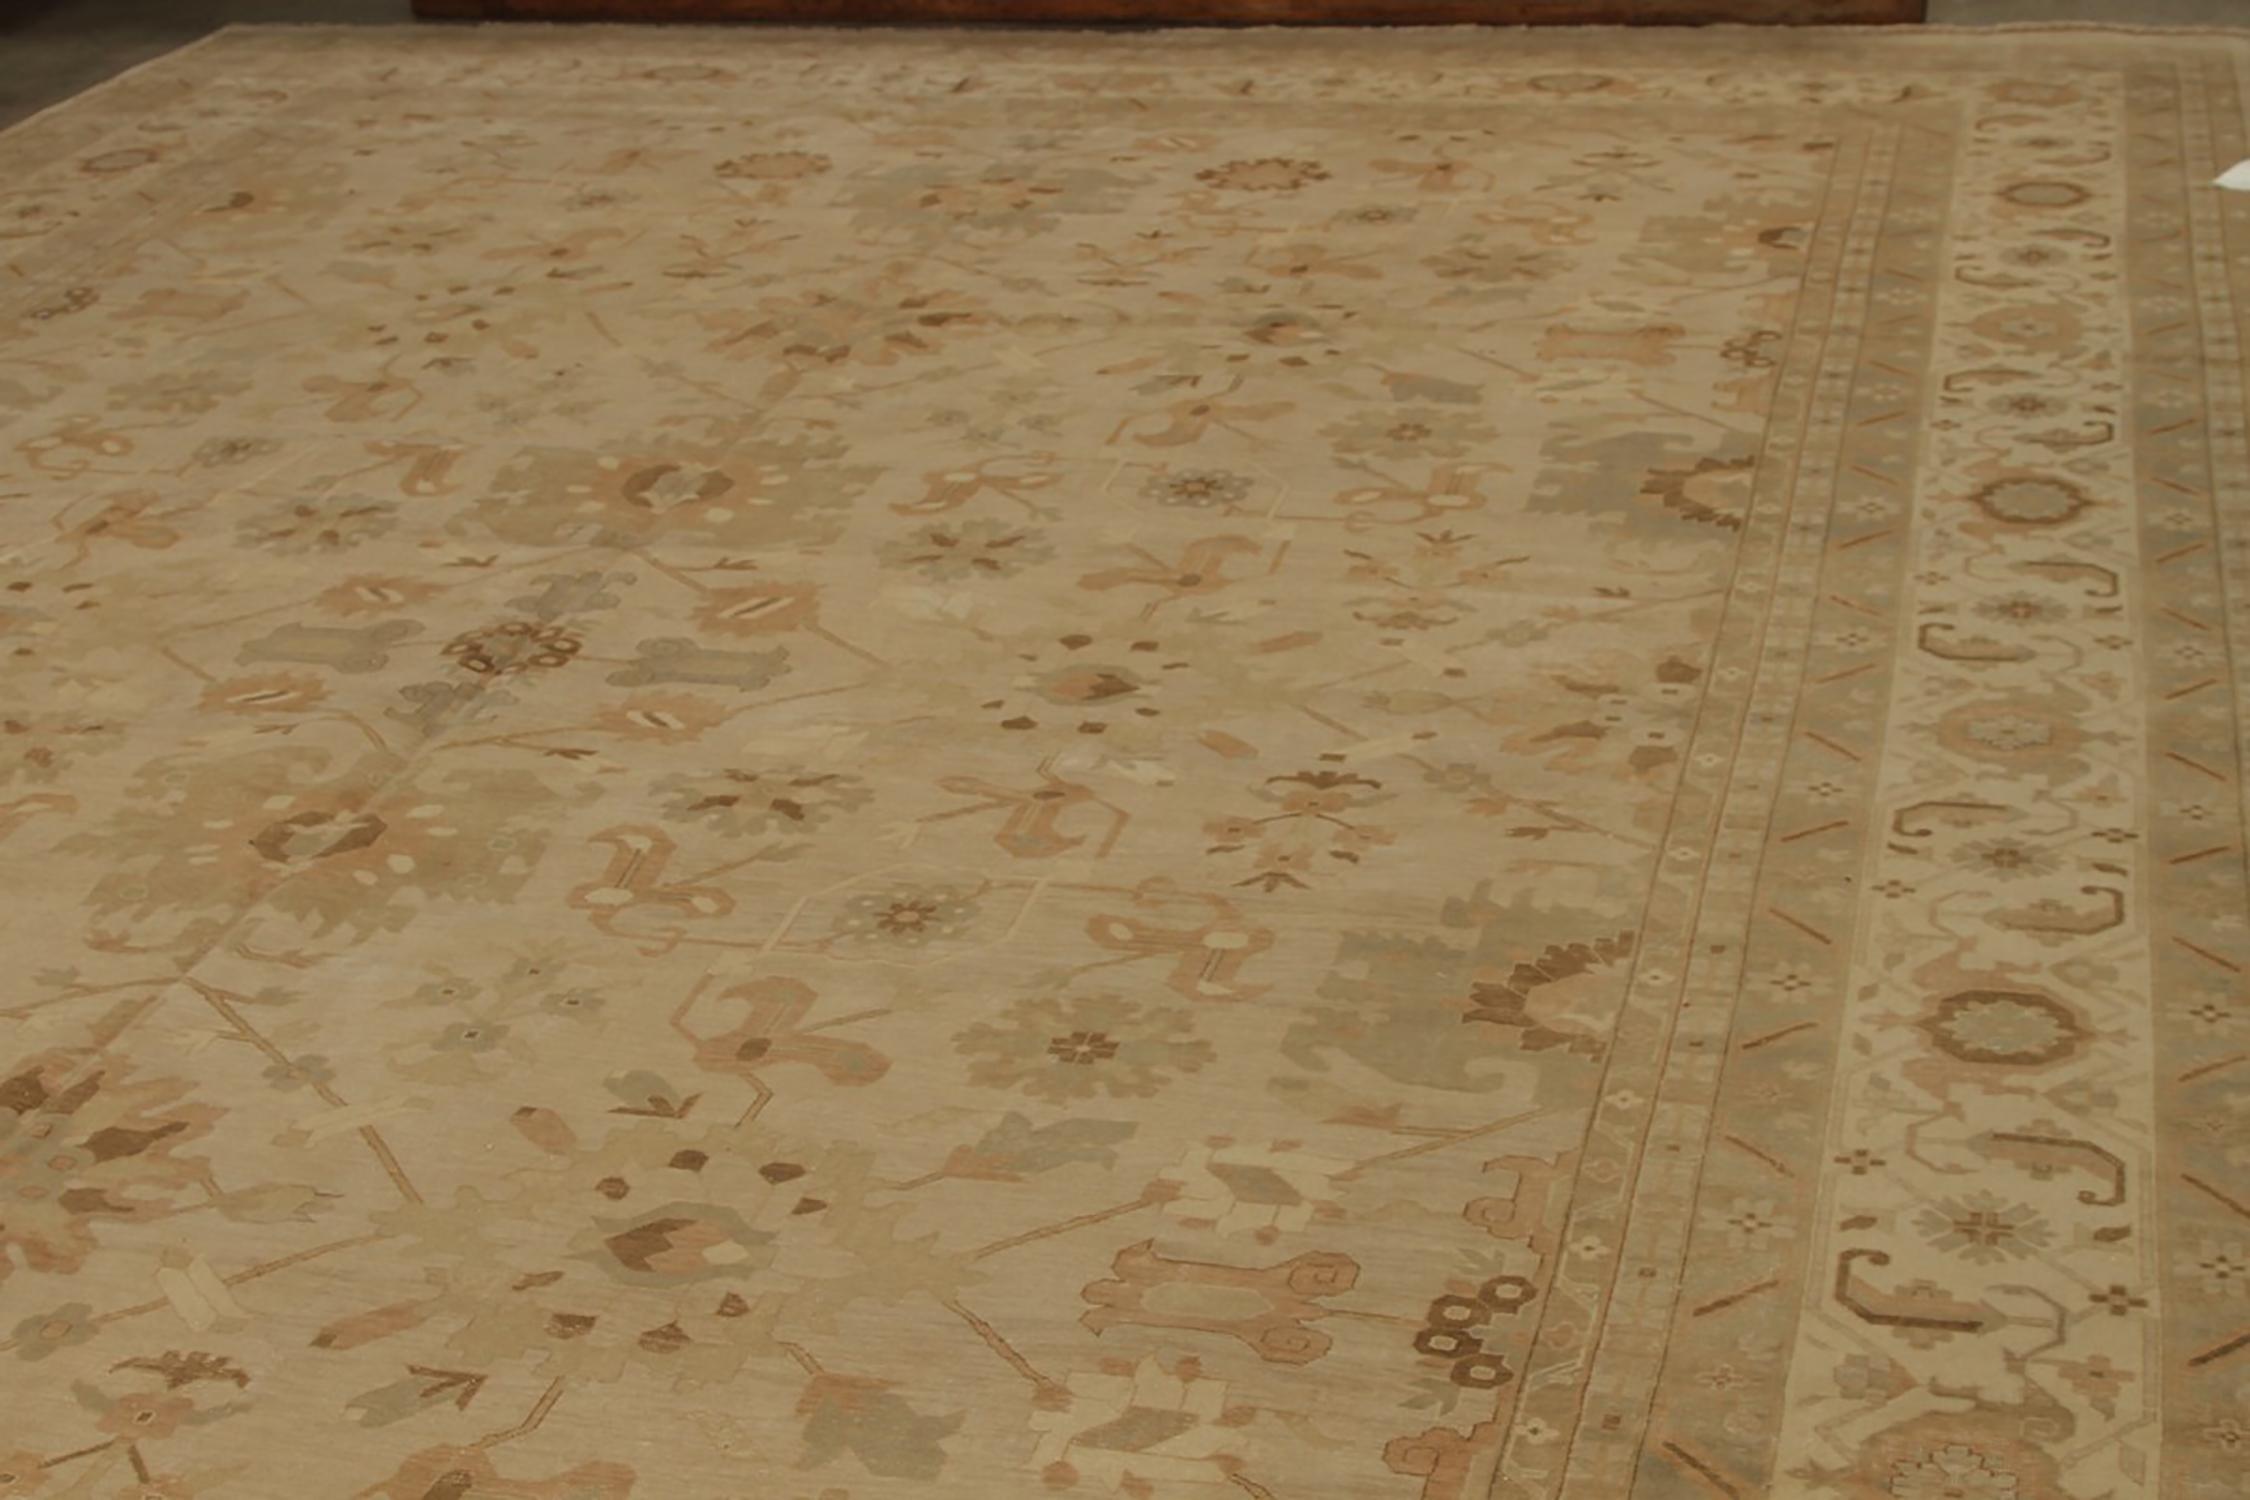 Ein 12 x 17 großer Teppich aus der Modern Classics-Kollektion von Rug & Kilim, eine Hommage an einige der berühmtesten Stile für handgefertigte Bodenbeläge, wie diese einzigartige großformatige Anspielung auf Harsang- und Krabbenpalmettenmuster in